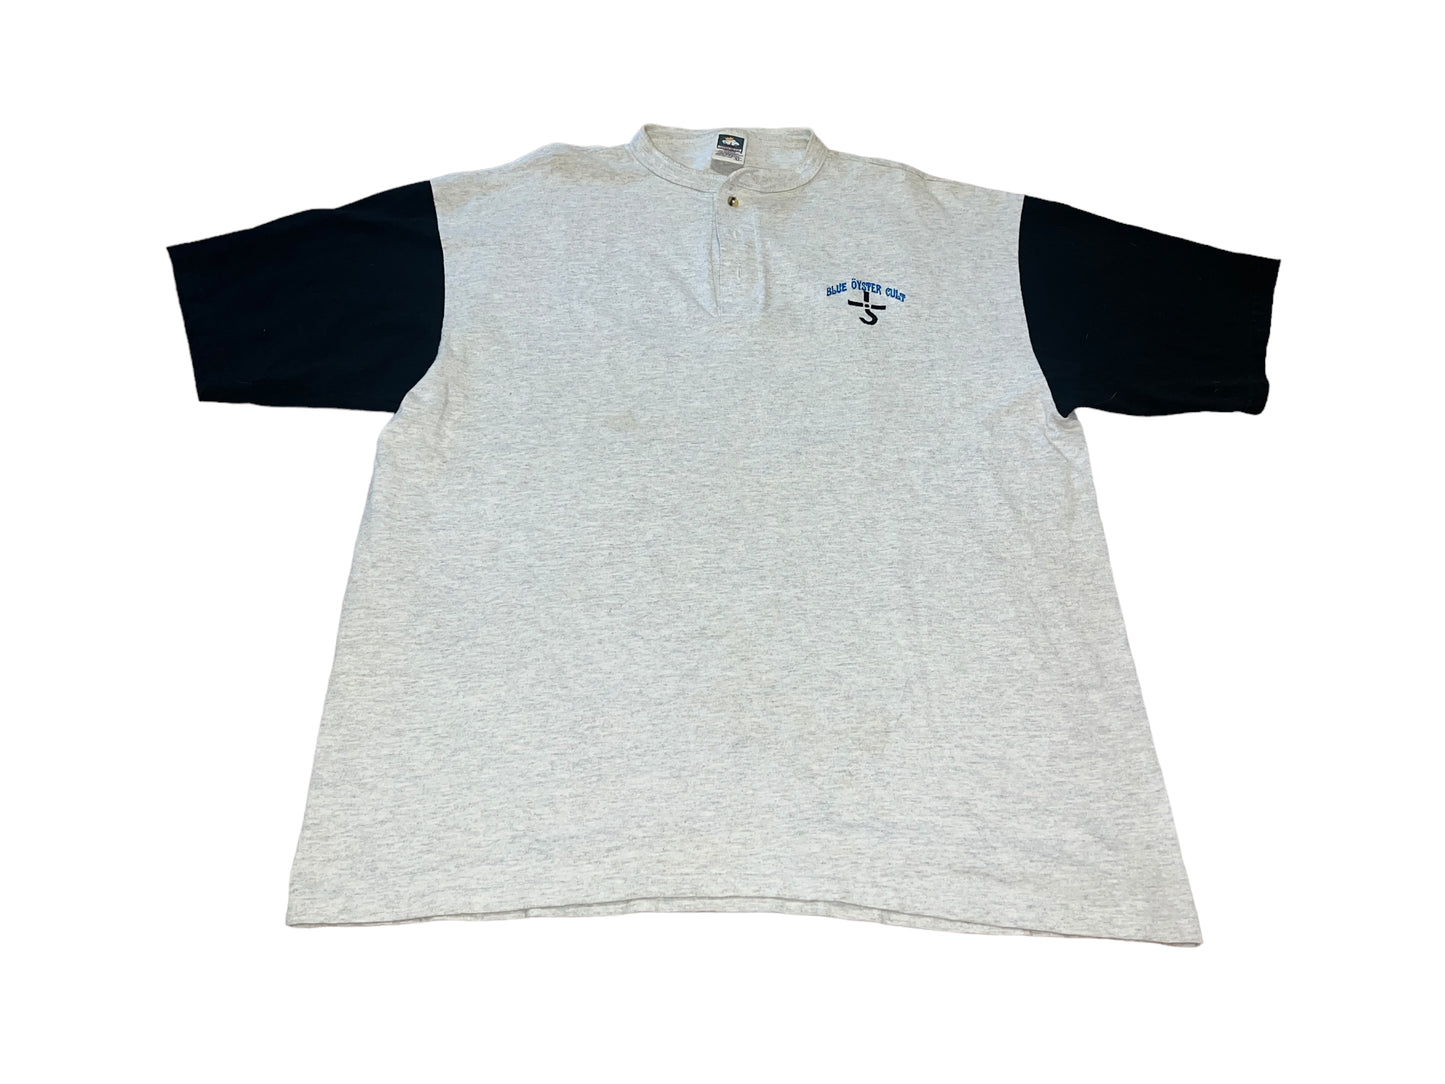 Vintage 2000 Blue Oyster Cult T-Shirt